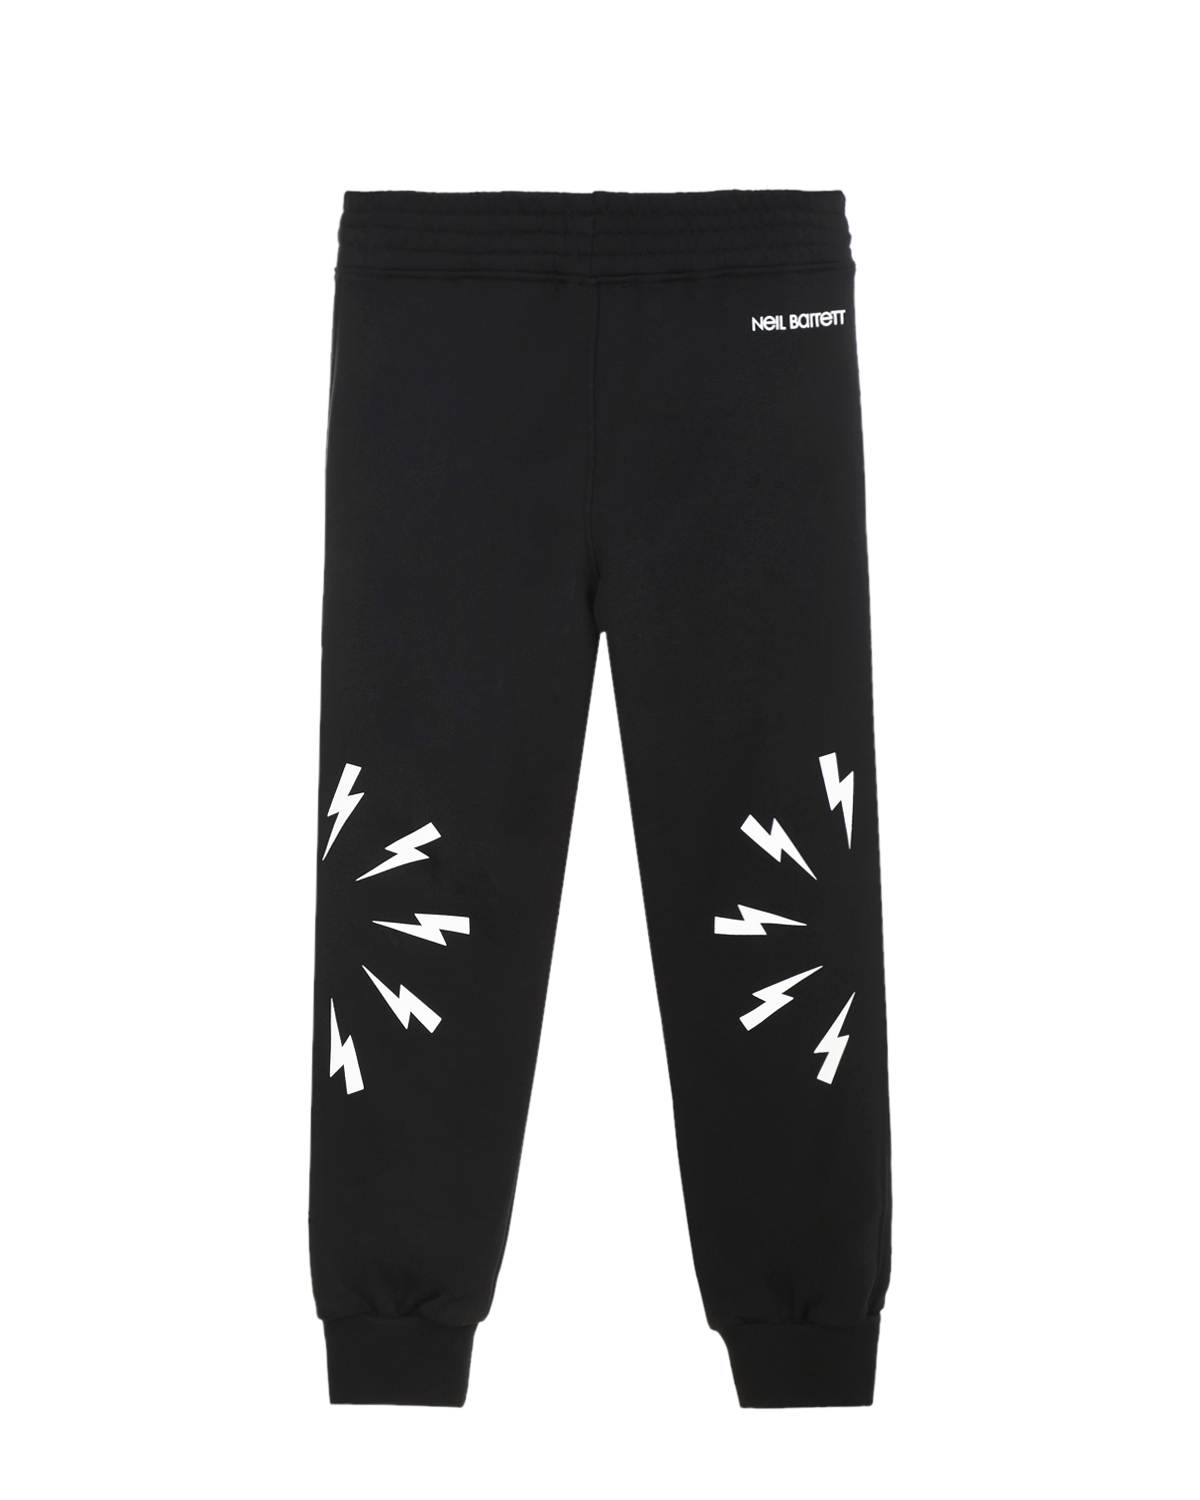 Черные спортивные брюки с принтом "молнии" Neil Barrett детские, размер 140, цвет черный - фото 2